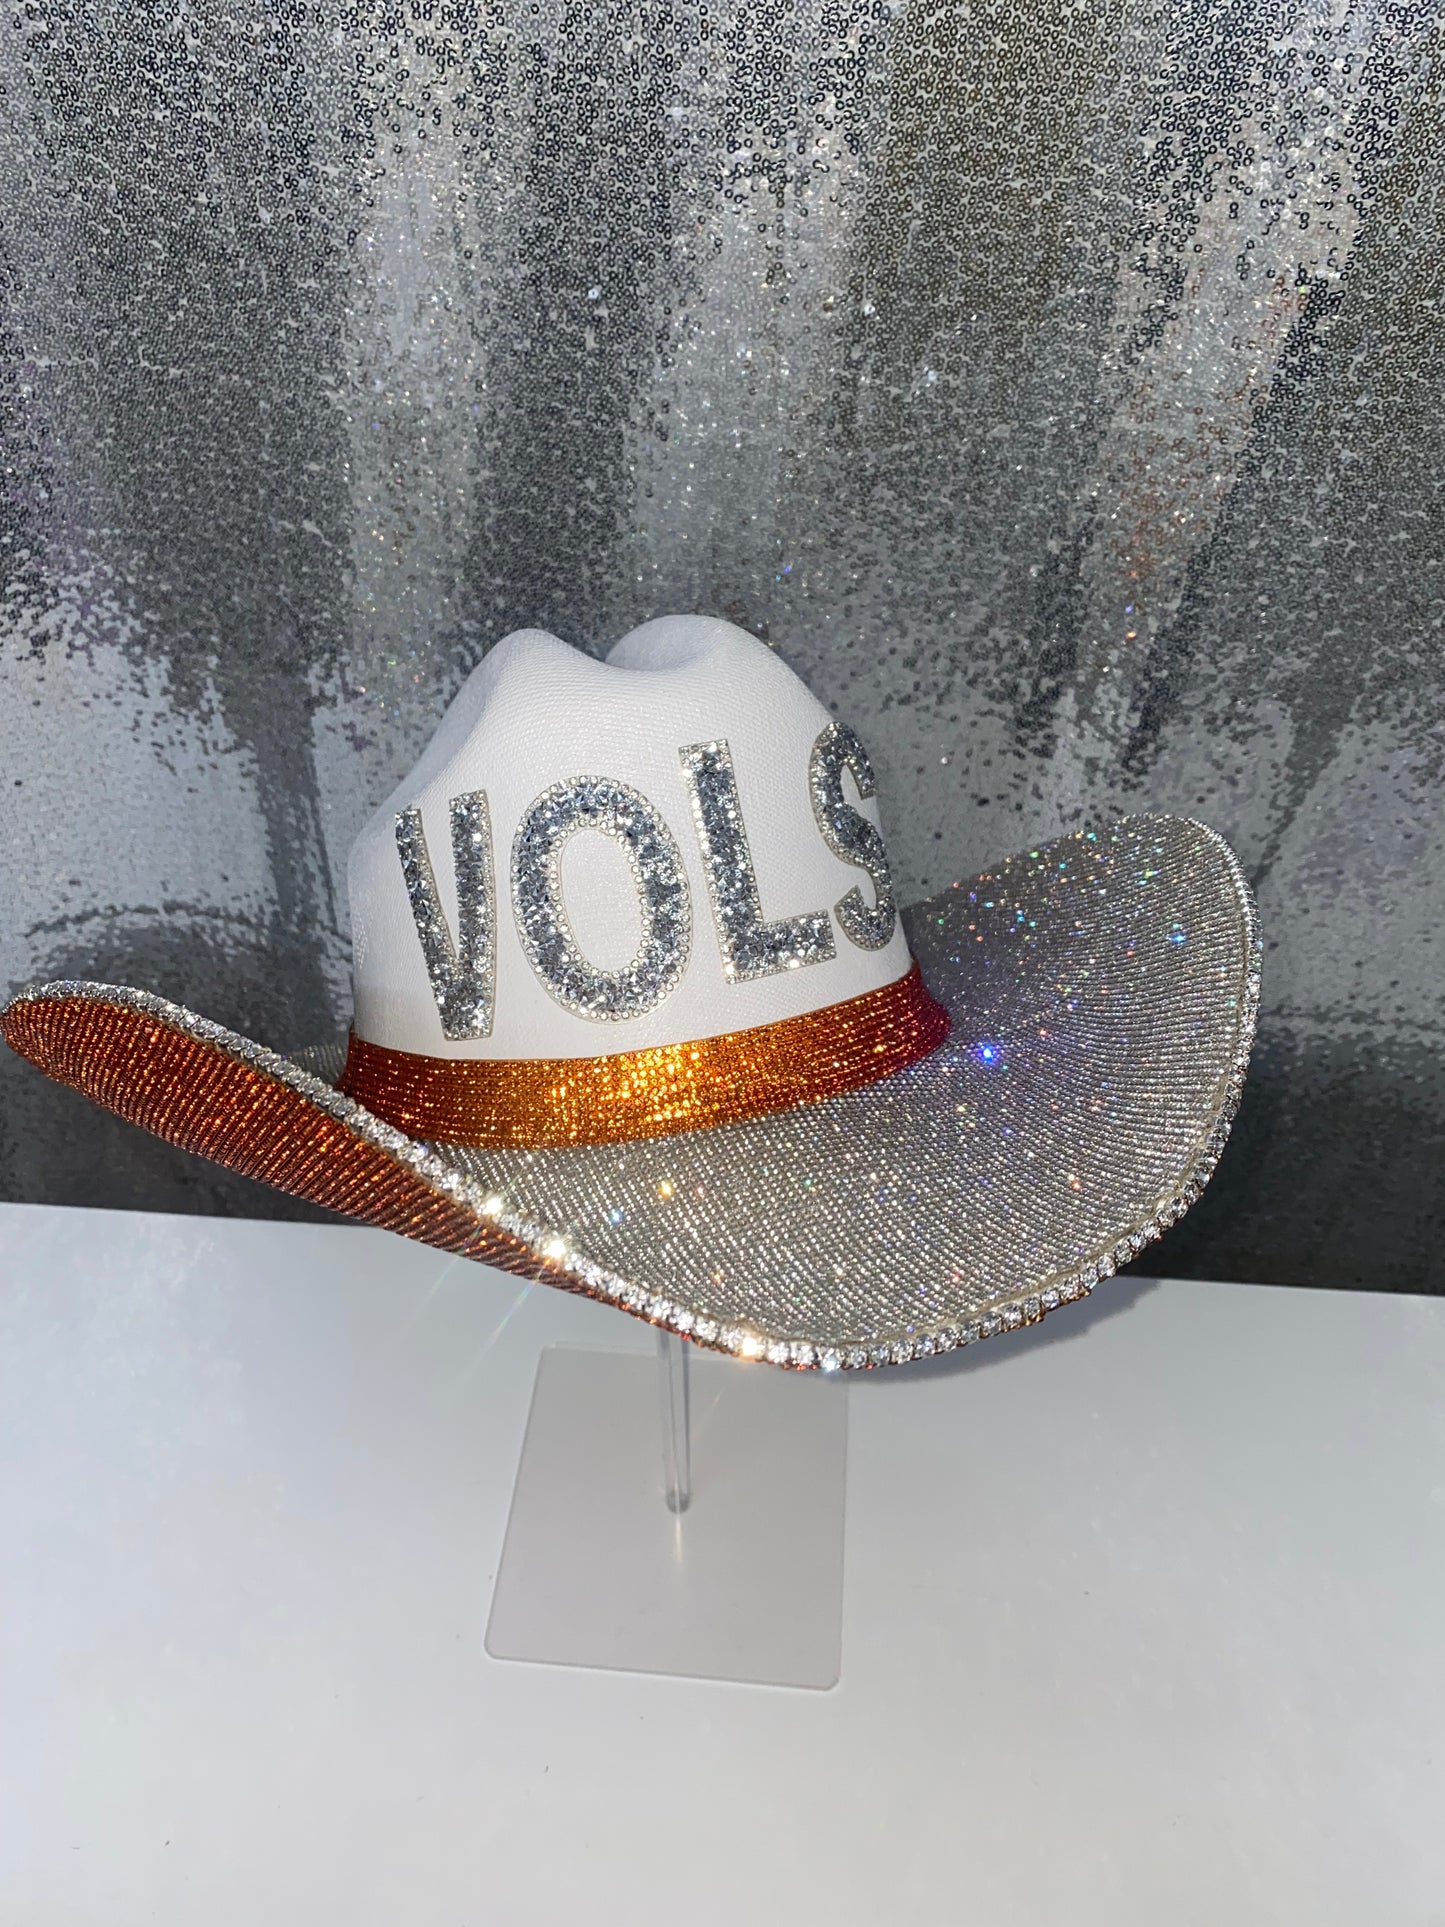 TN VOLS Hat